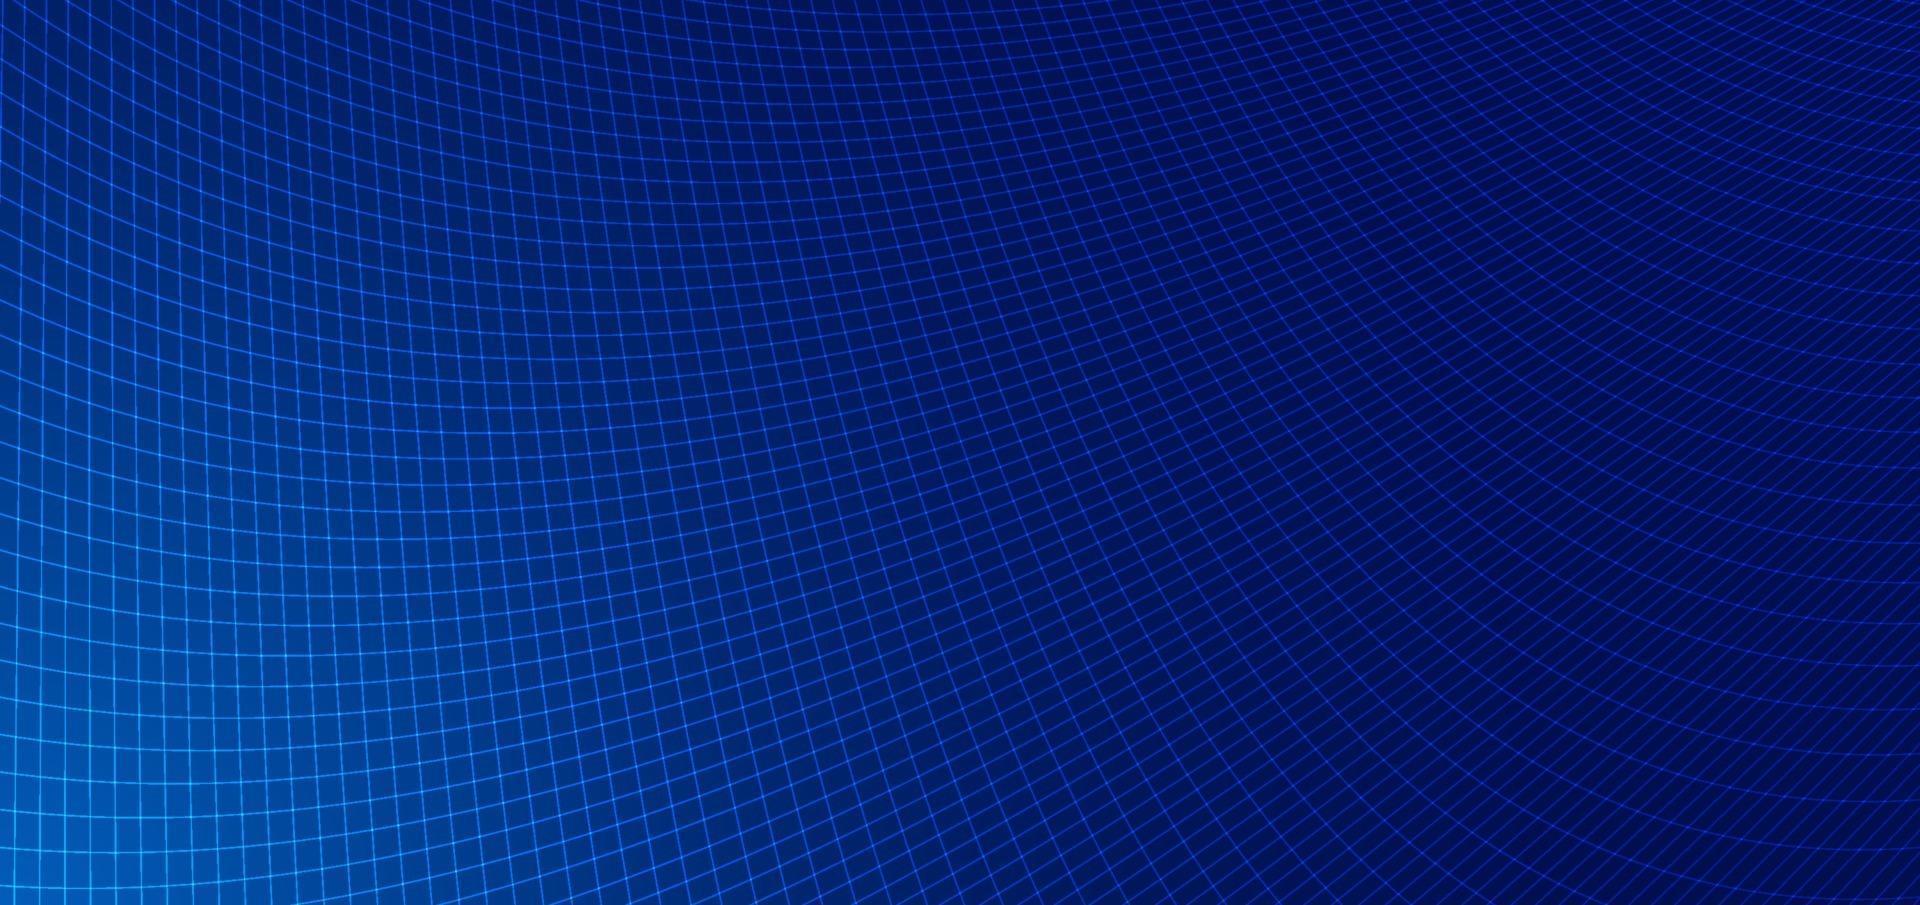 lignes bleues abstraites grille maille motif perspective courbe motif sur fond bleu foncé. vecteur